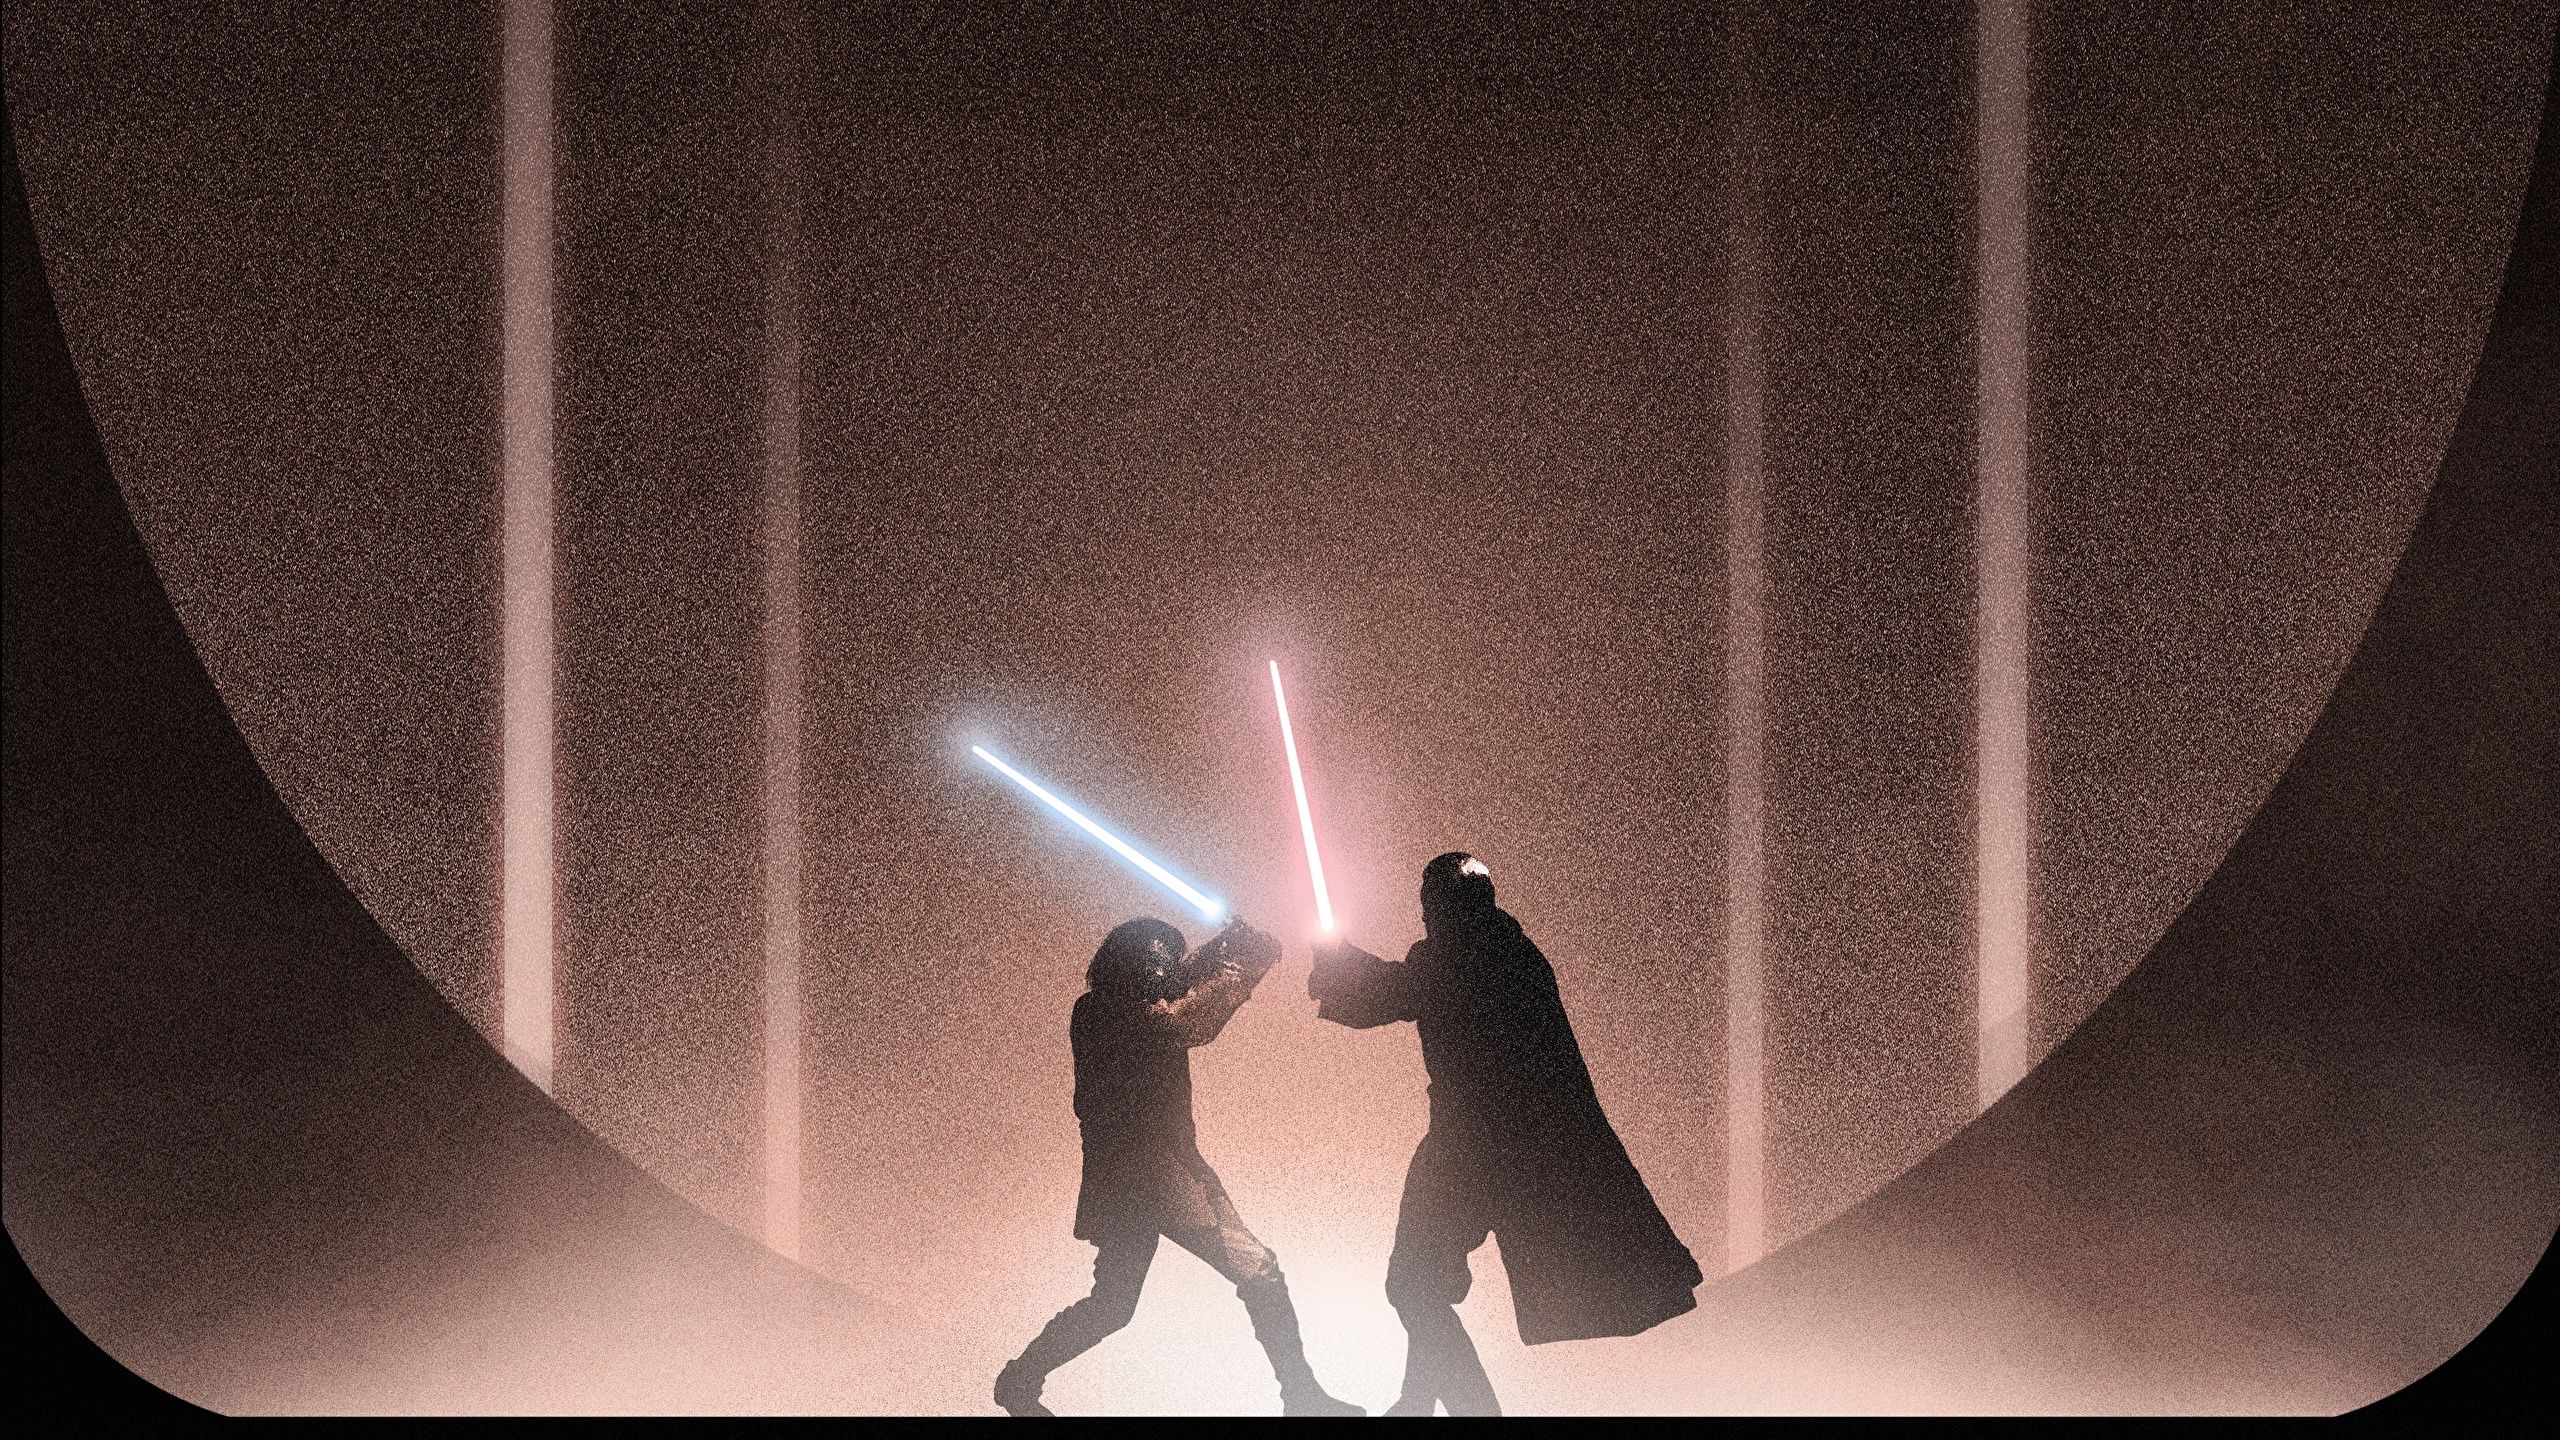 Star Wars Lightsaber Duels Episodes